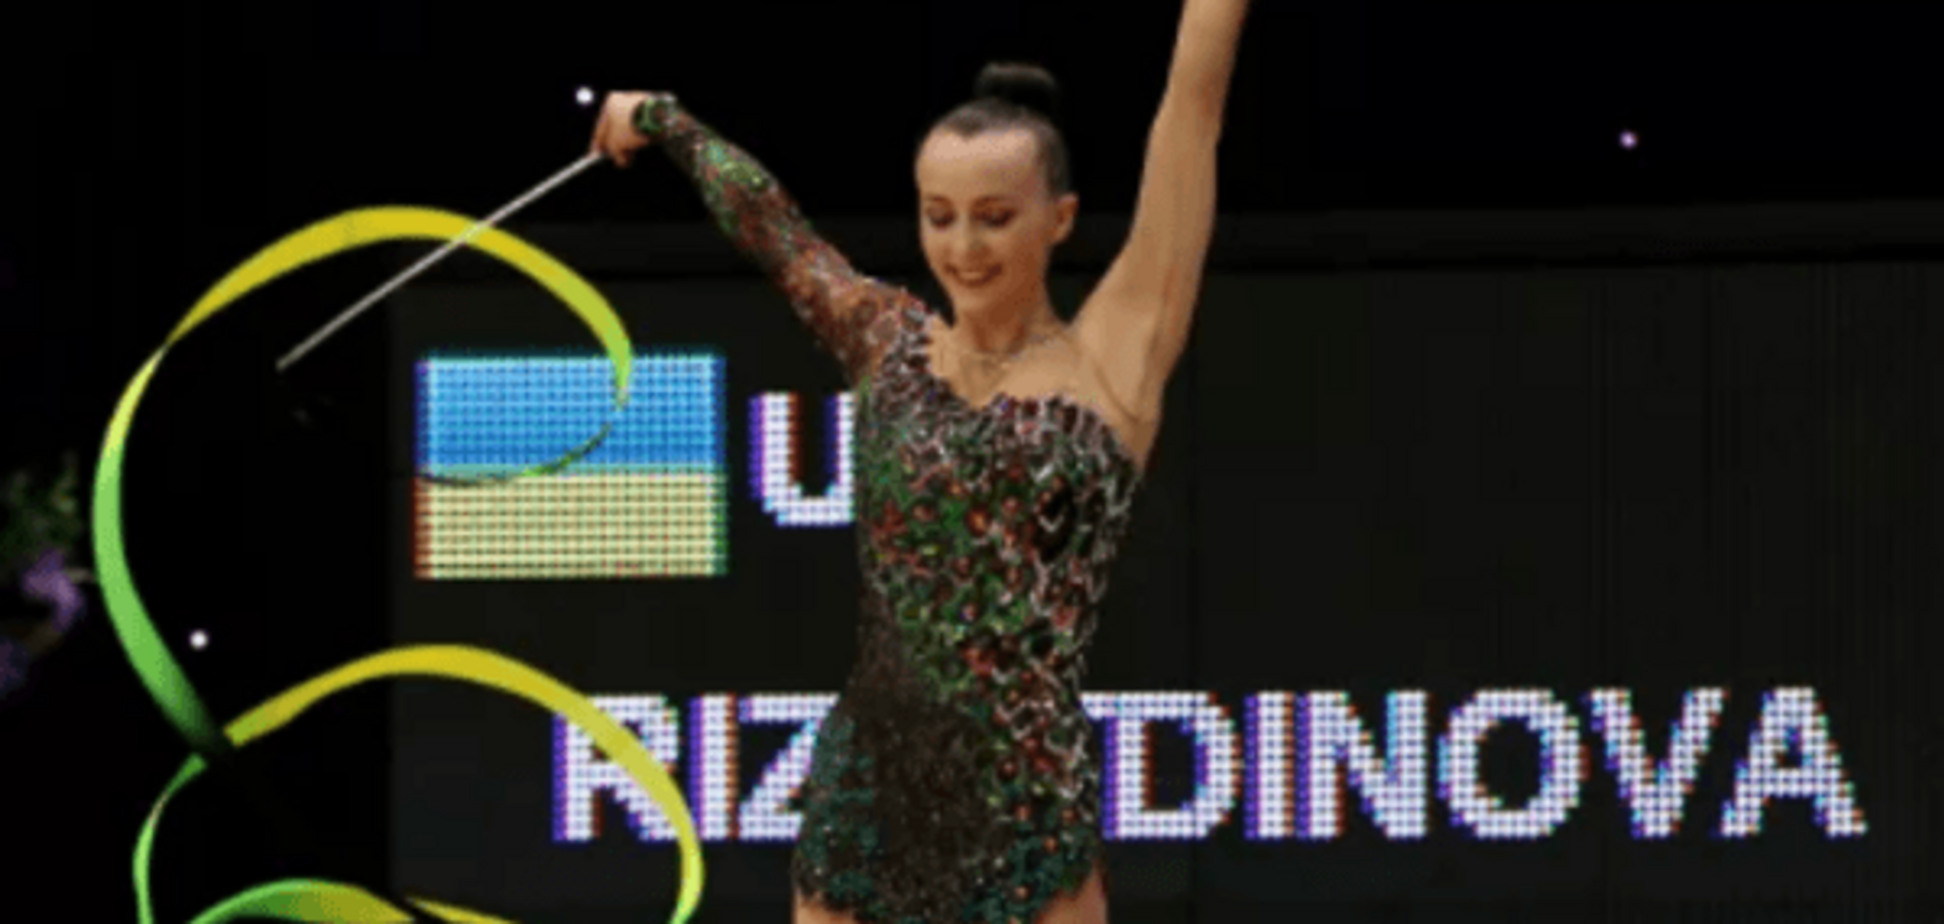 Кримчанка завоювала для України два 'золота' на Кубку світу зі спортивної гімнастики